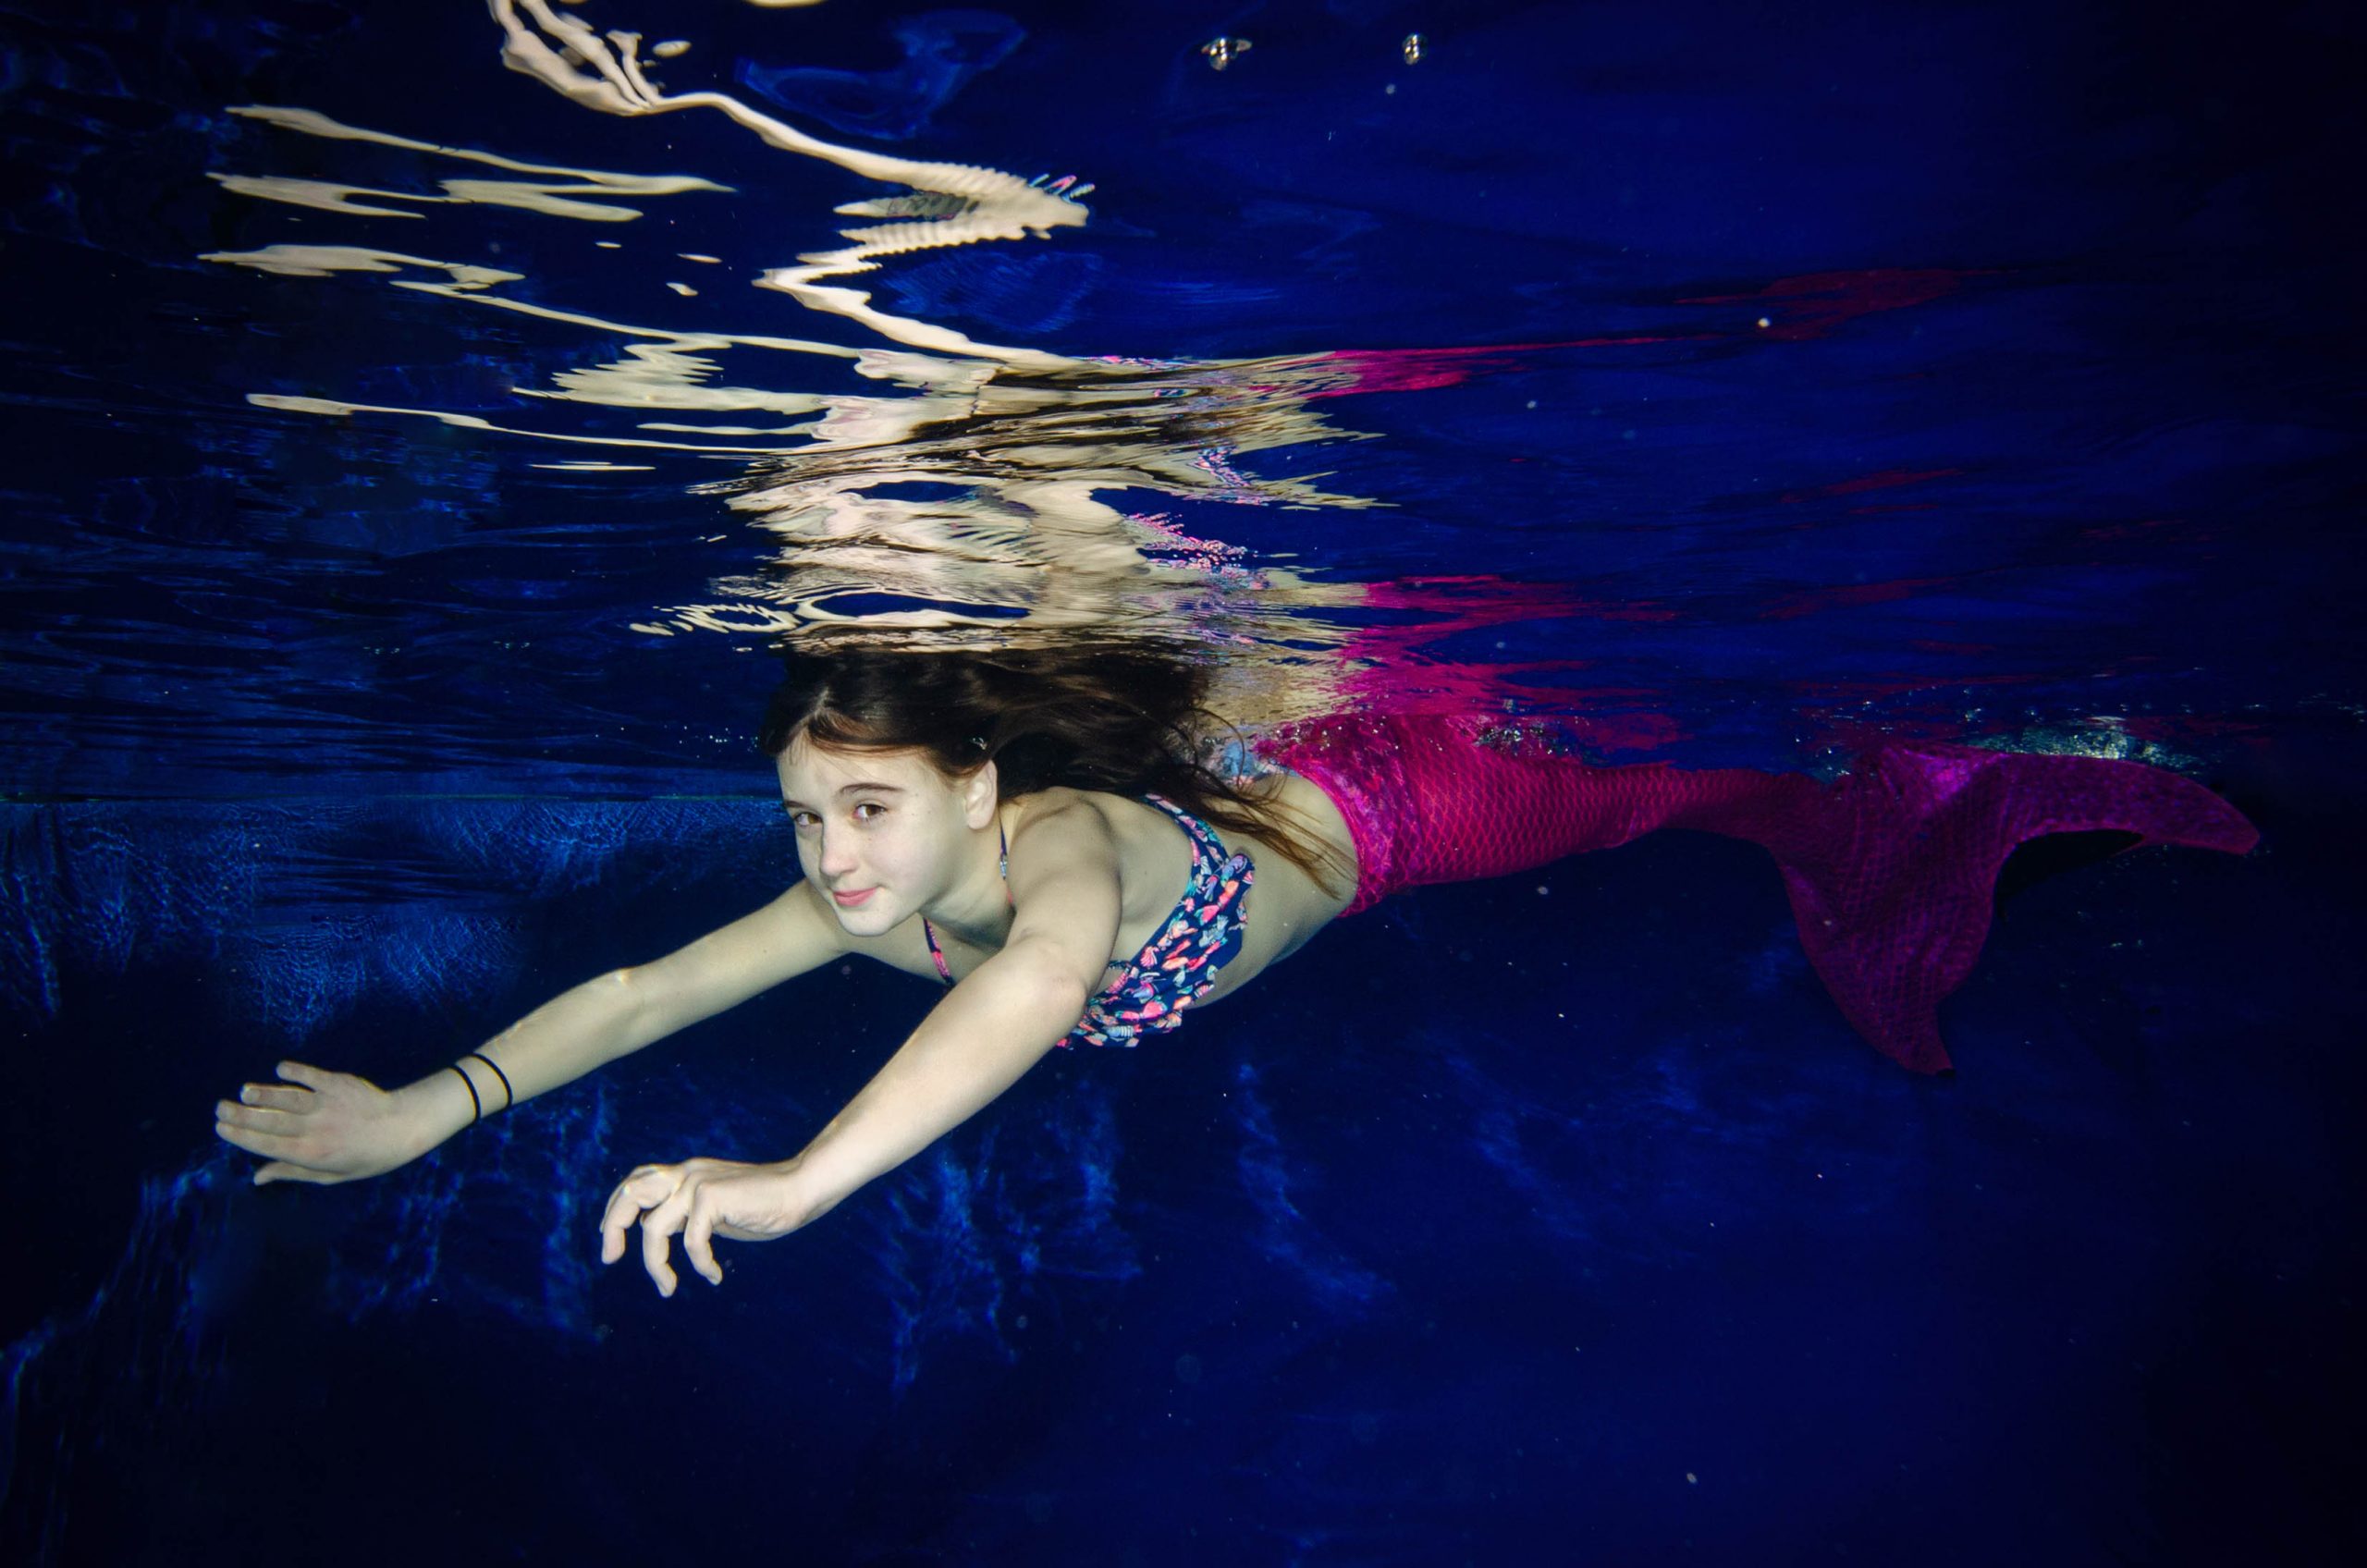 mermaid-meerjungfrau-fotoshooting-muenchen-glonn-pictures-for-you